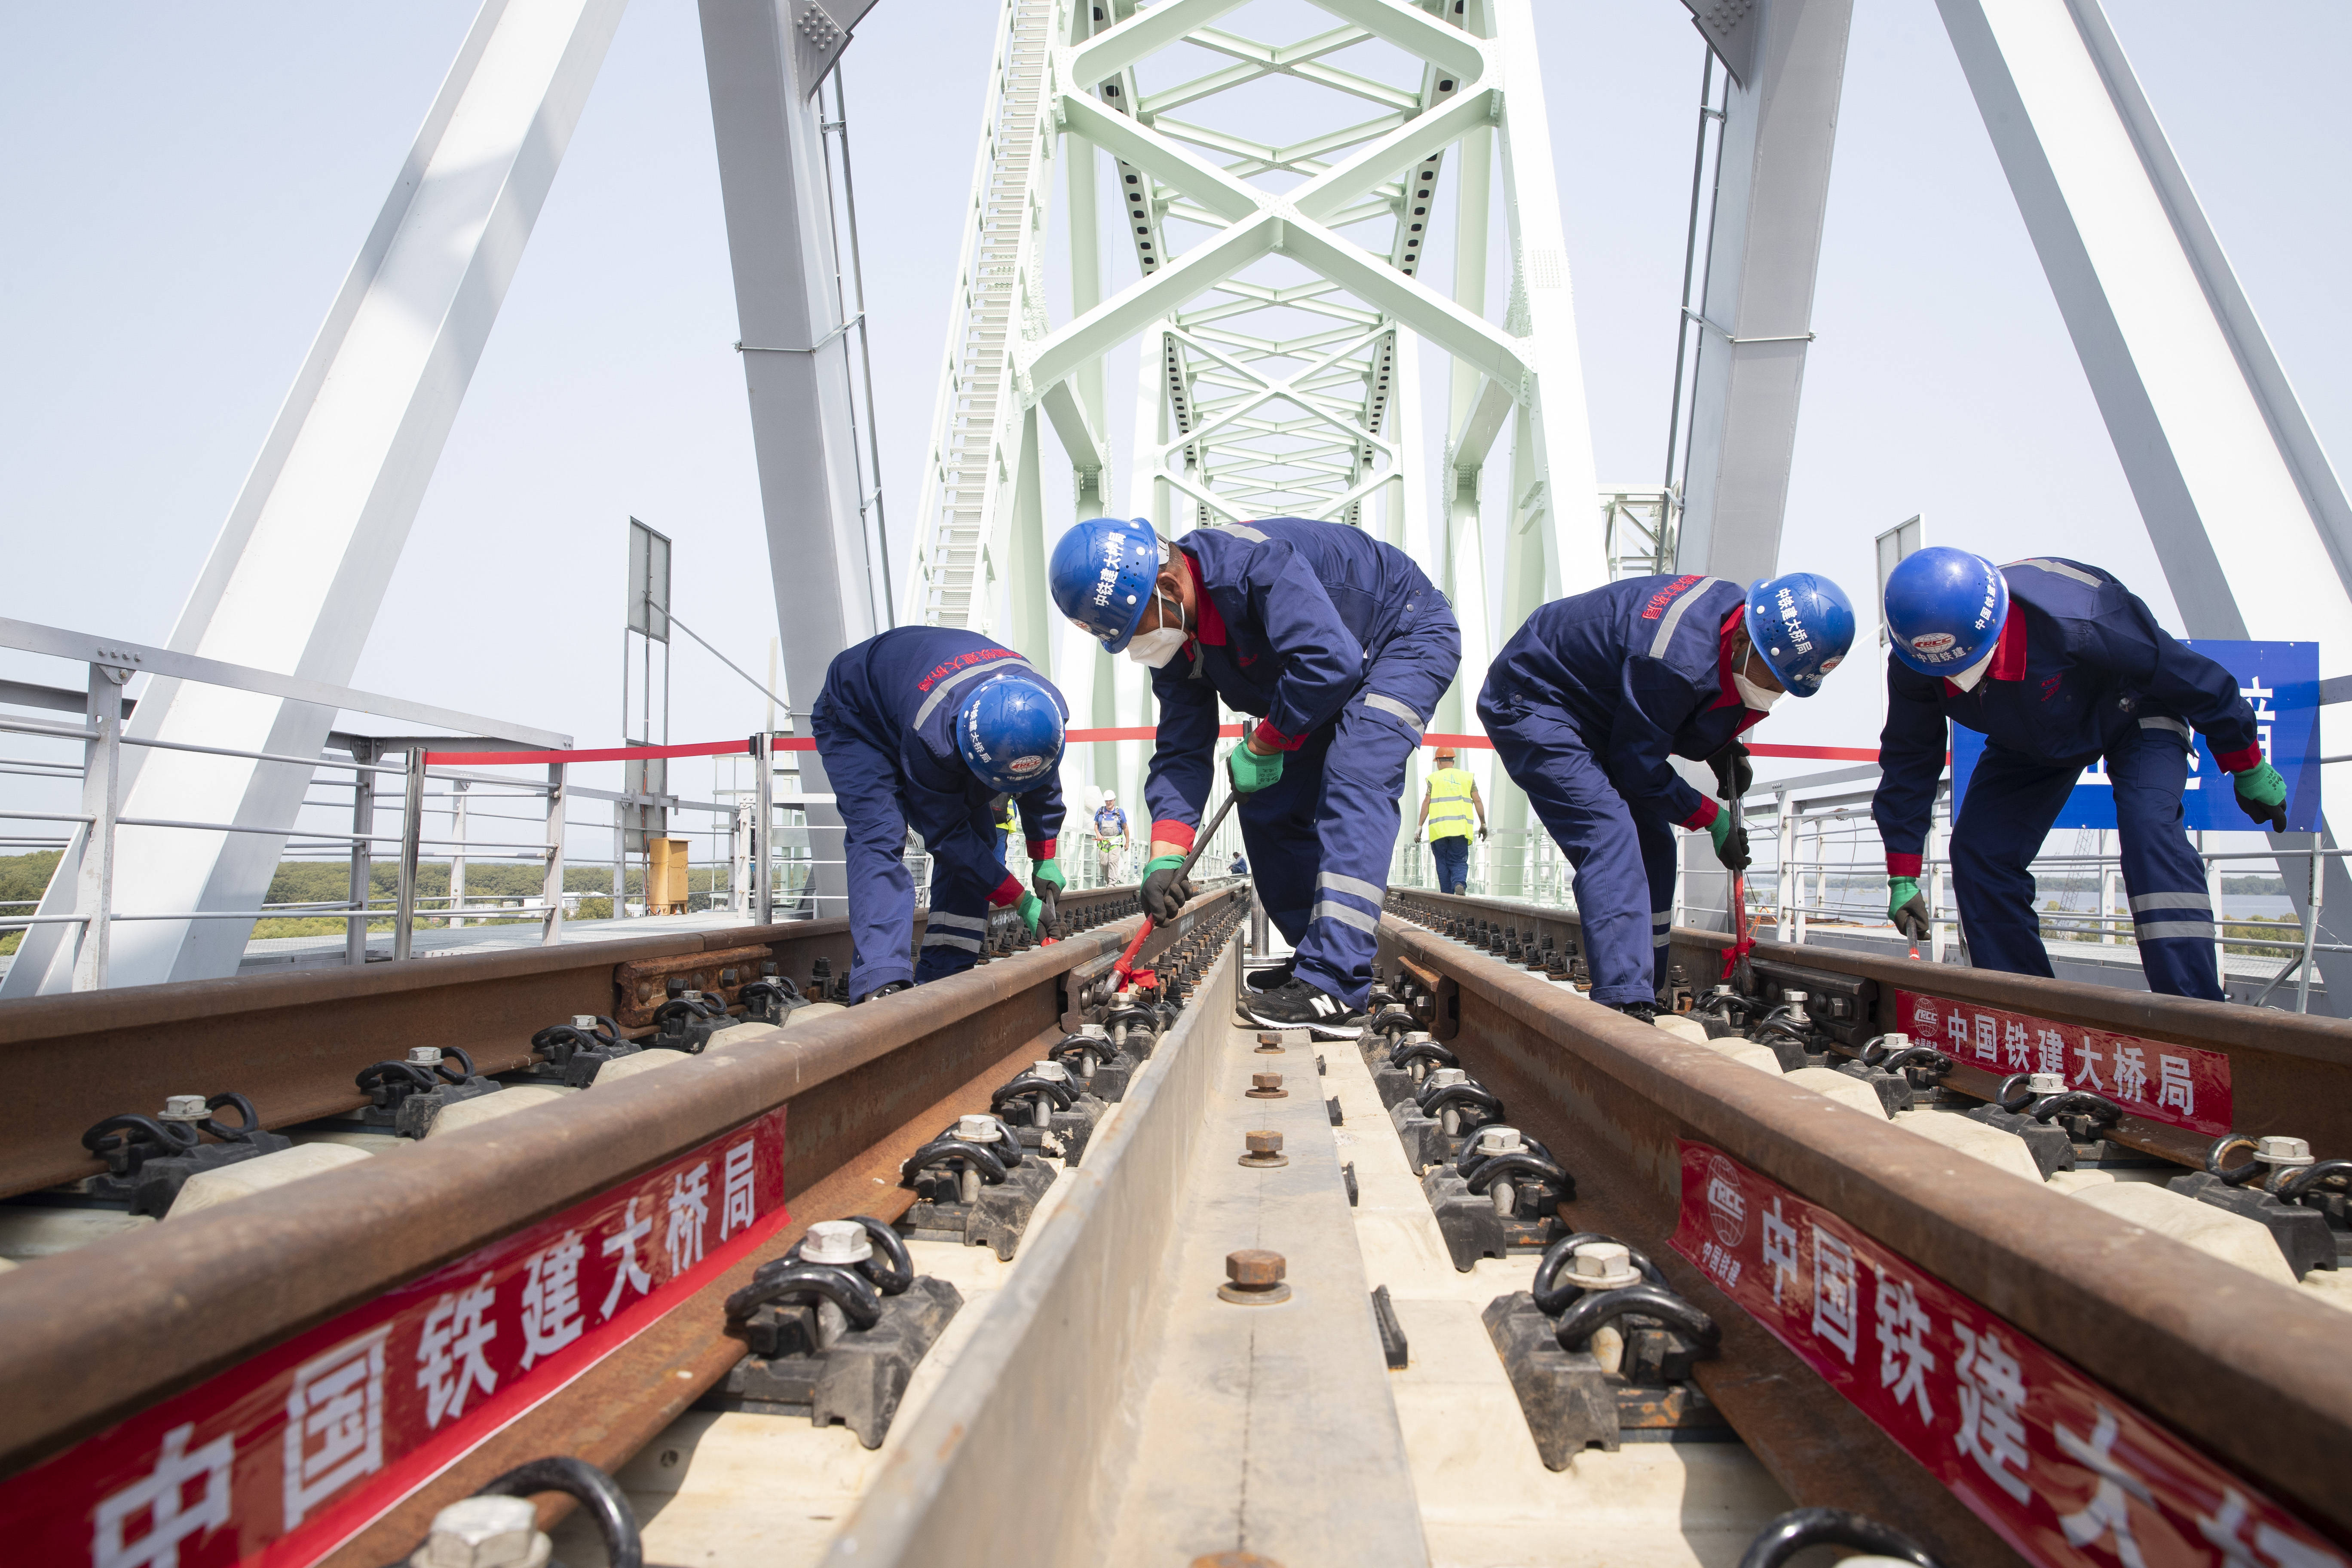 8月17日,工人在同江中俄黑龙江铁路大桥施工现场进行轨道夹板安装